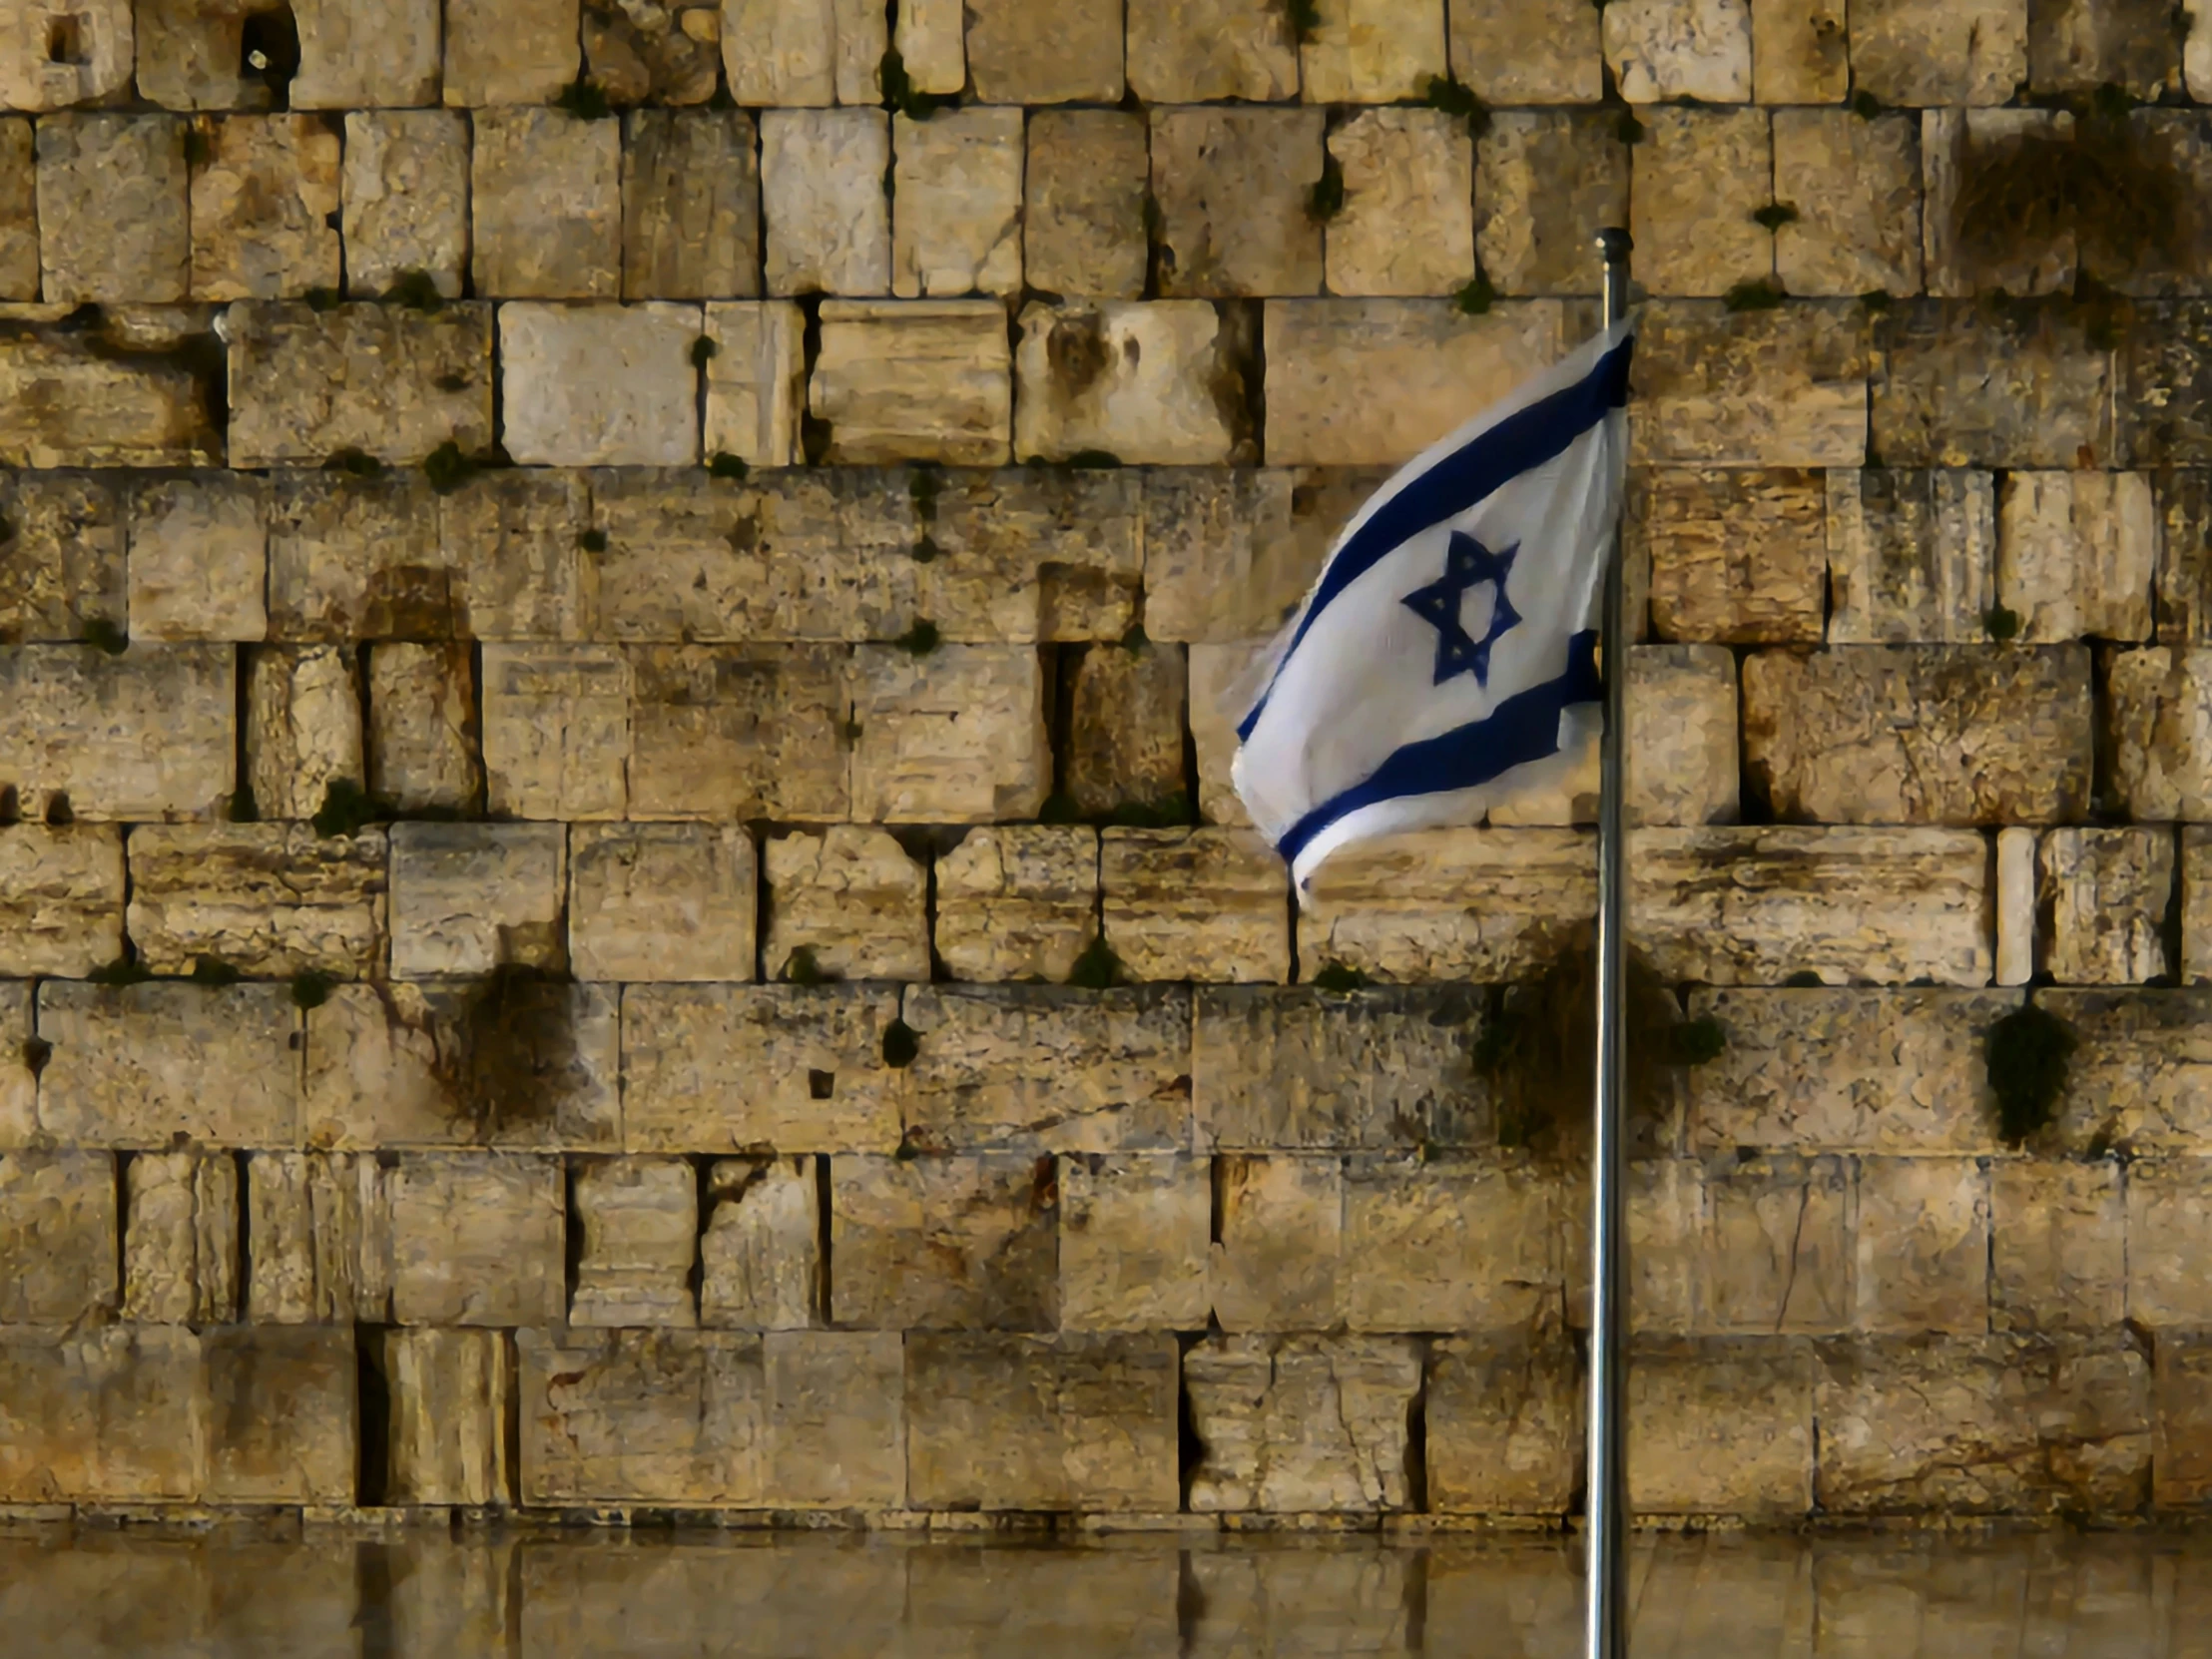 an israeli flag flying high on top of a pole near some bricks